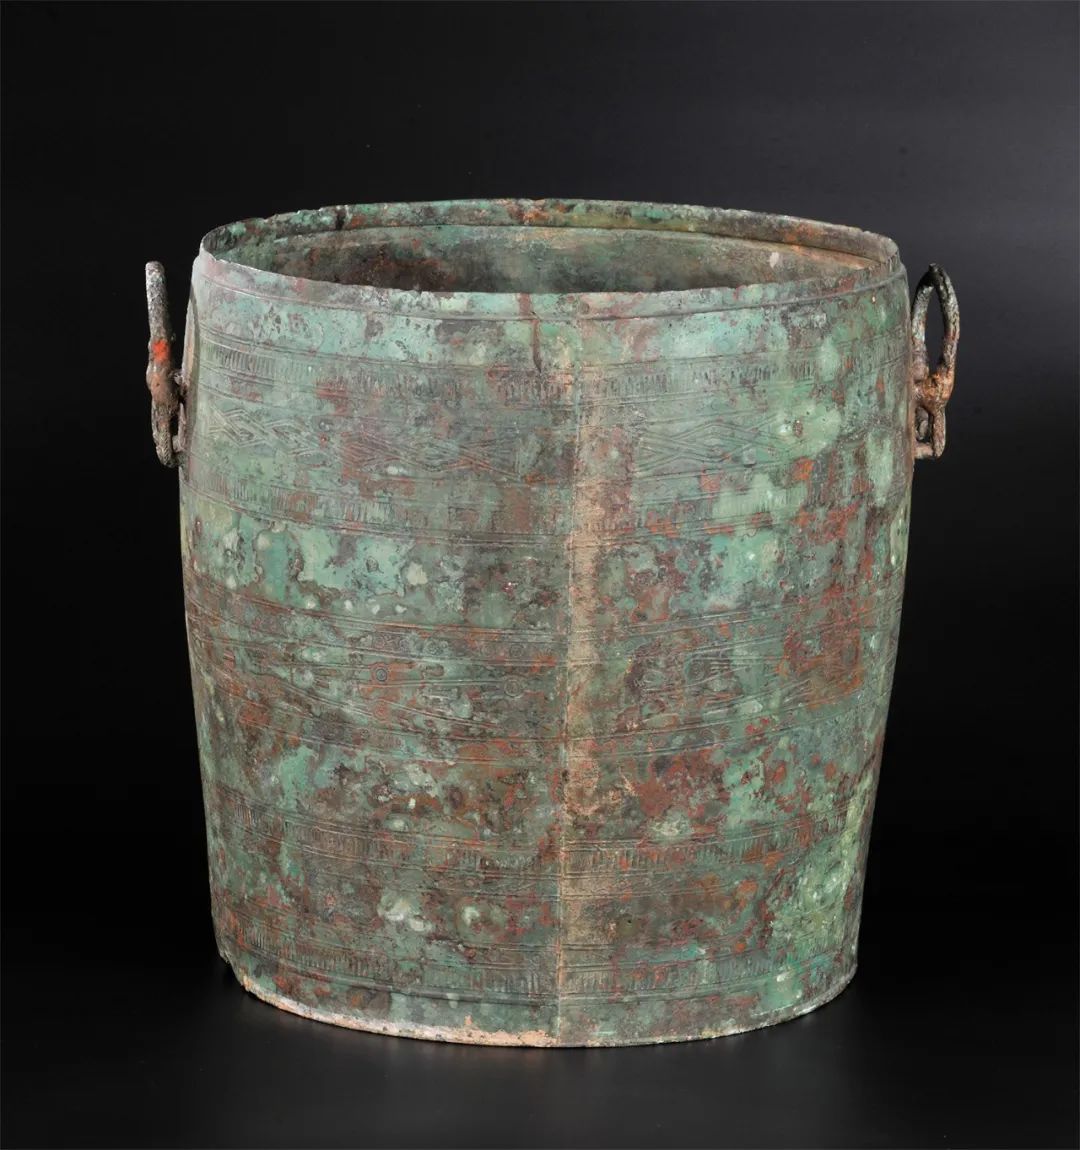 铜提筒（盛酒器）  西汉（公元前202年—公元8年） 1983年象岗南越王墓出土  西汉南越王博物馆藏